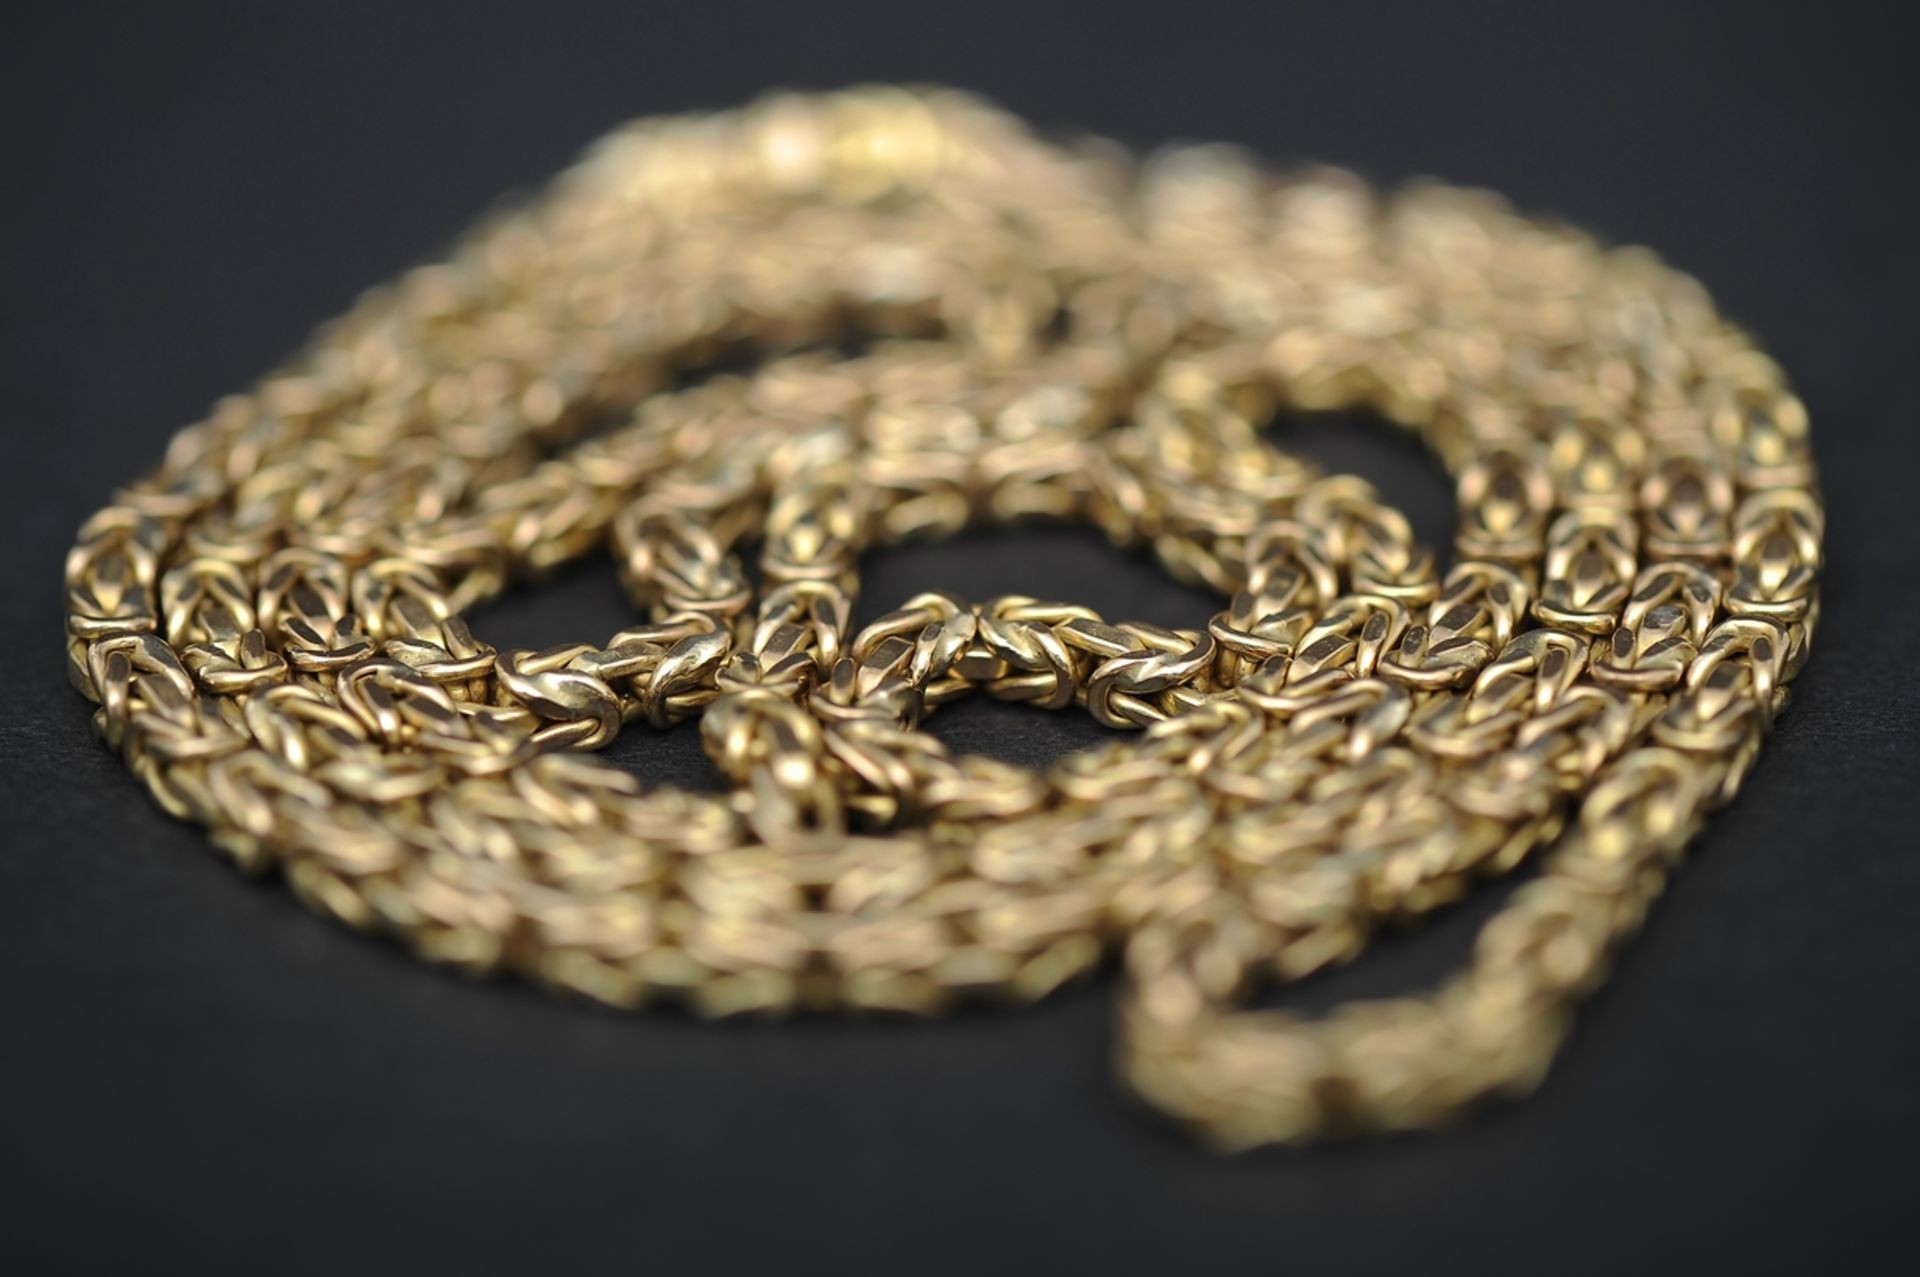 Halskette in 585er Gelbgold, aufwändiger Kettengliederdekor, 1 Stelle leicht aufgebogen, schadhaft. - Image 2 of 9